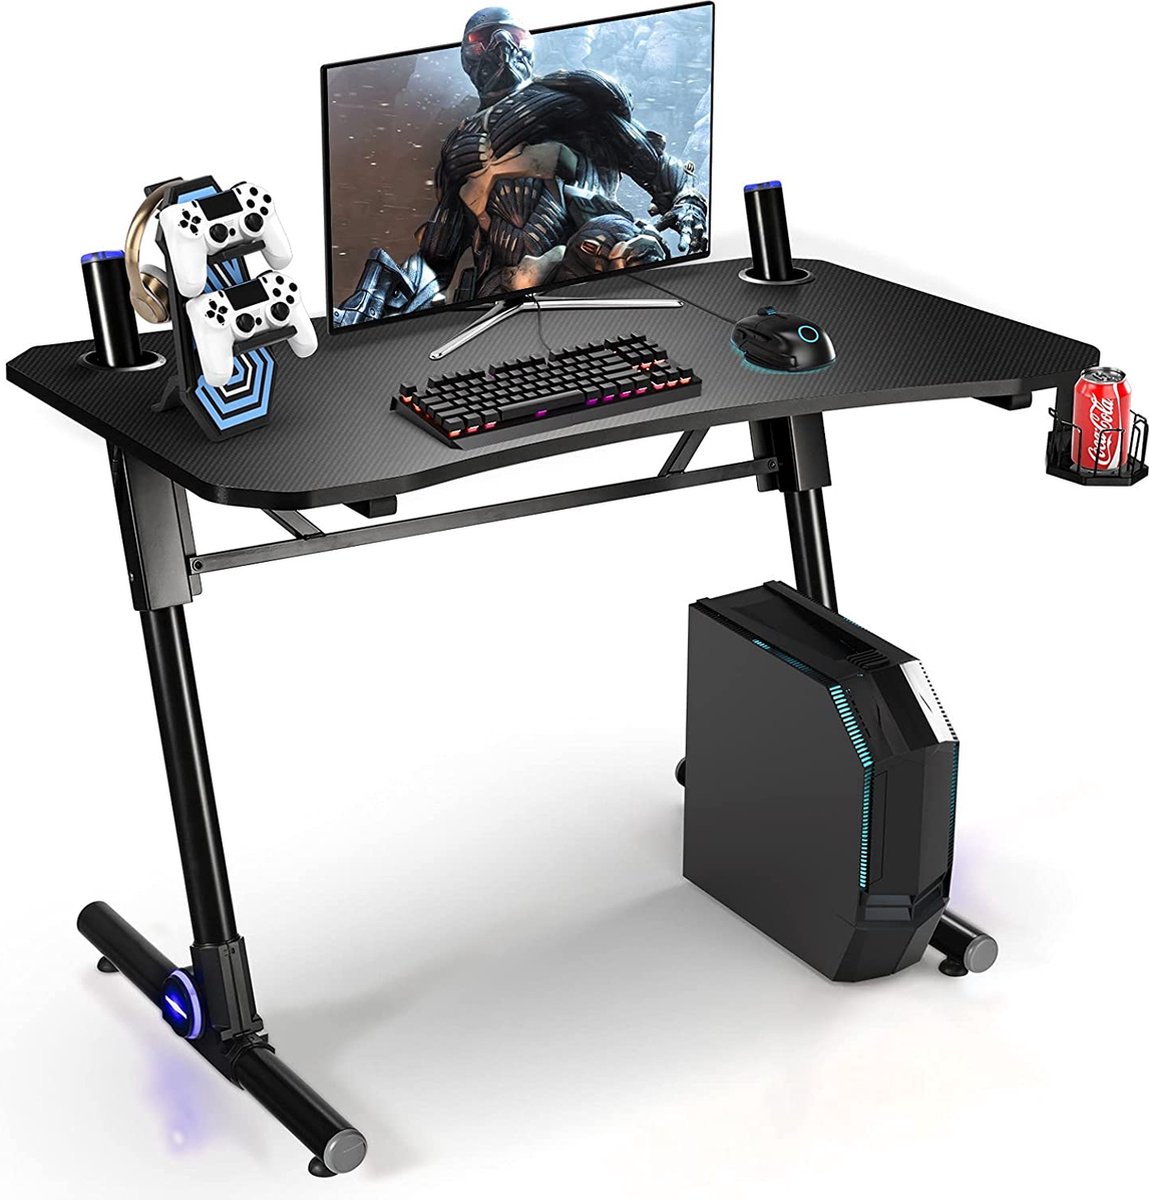 LUXGOODS Gaming bureau, in hoogte verstelbaar PC computertafel met blauwe LED-verlichting, gaming handvat rek & bekerhouder, Z-vormige ergonomische thuis kantoor gamingtafel met koolstofvezel textuur